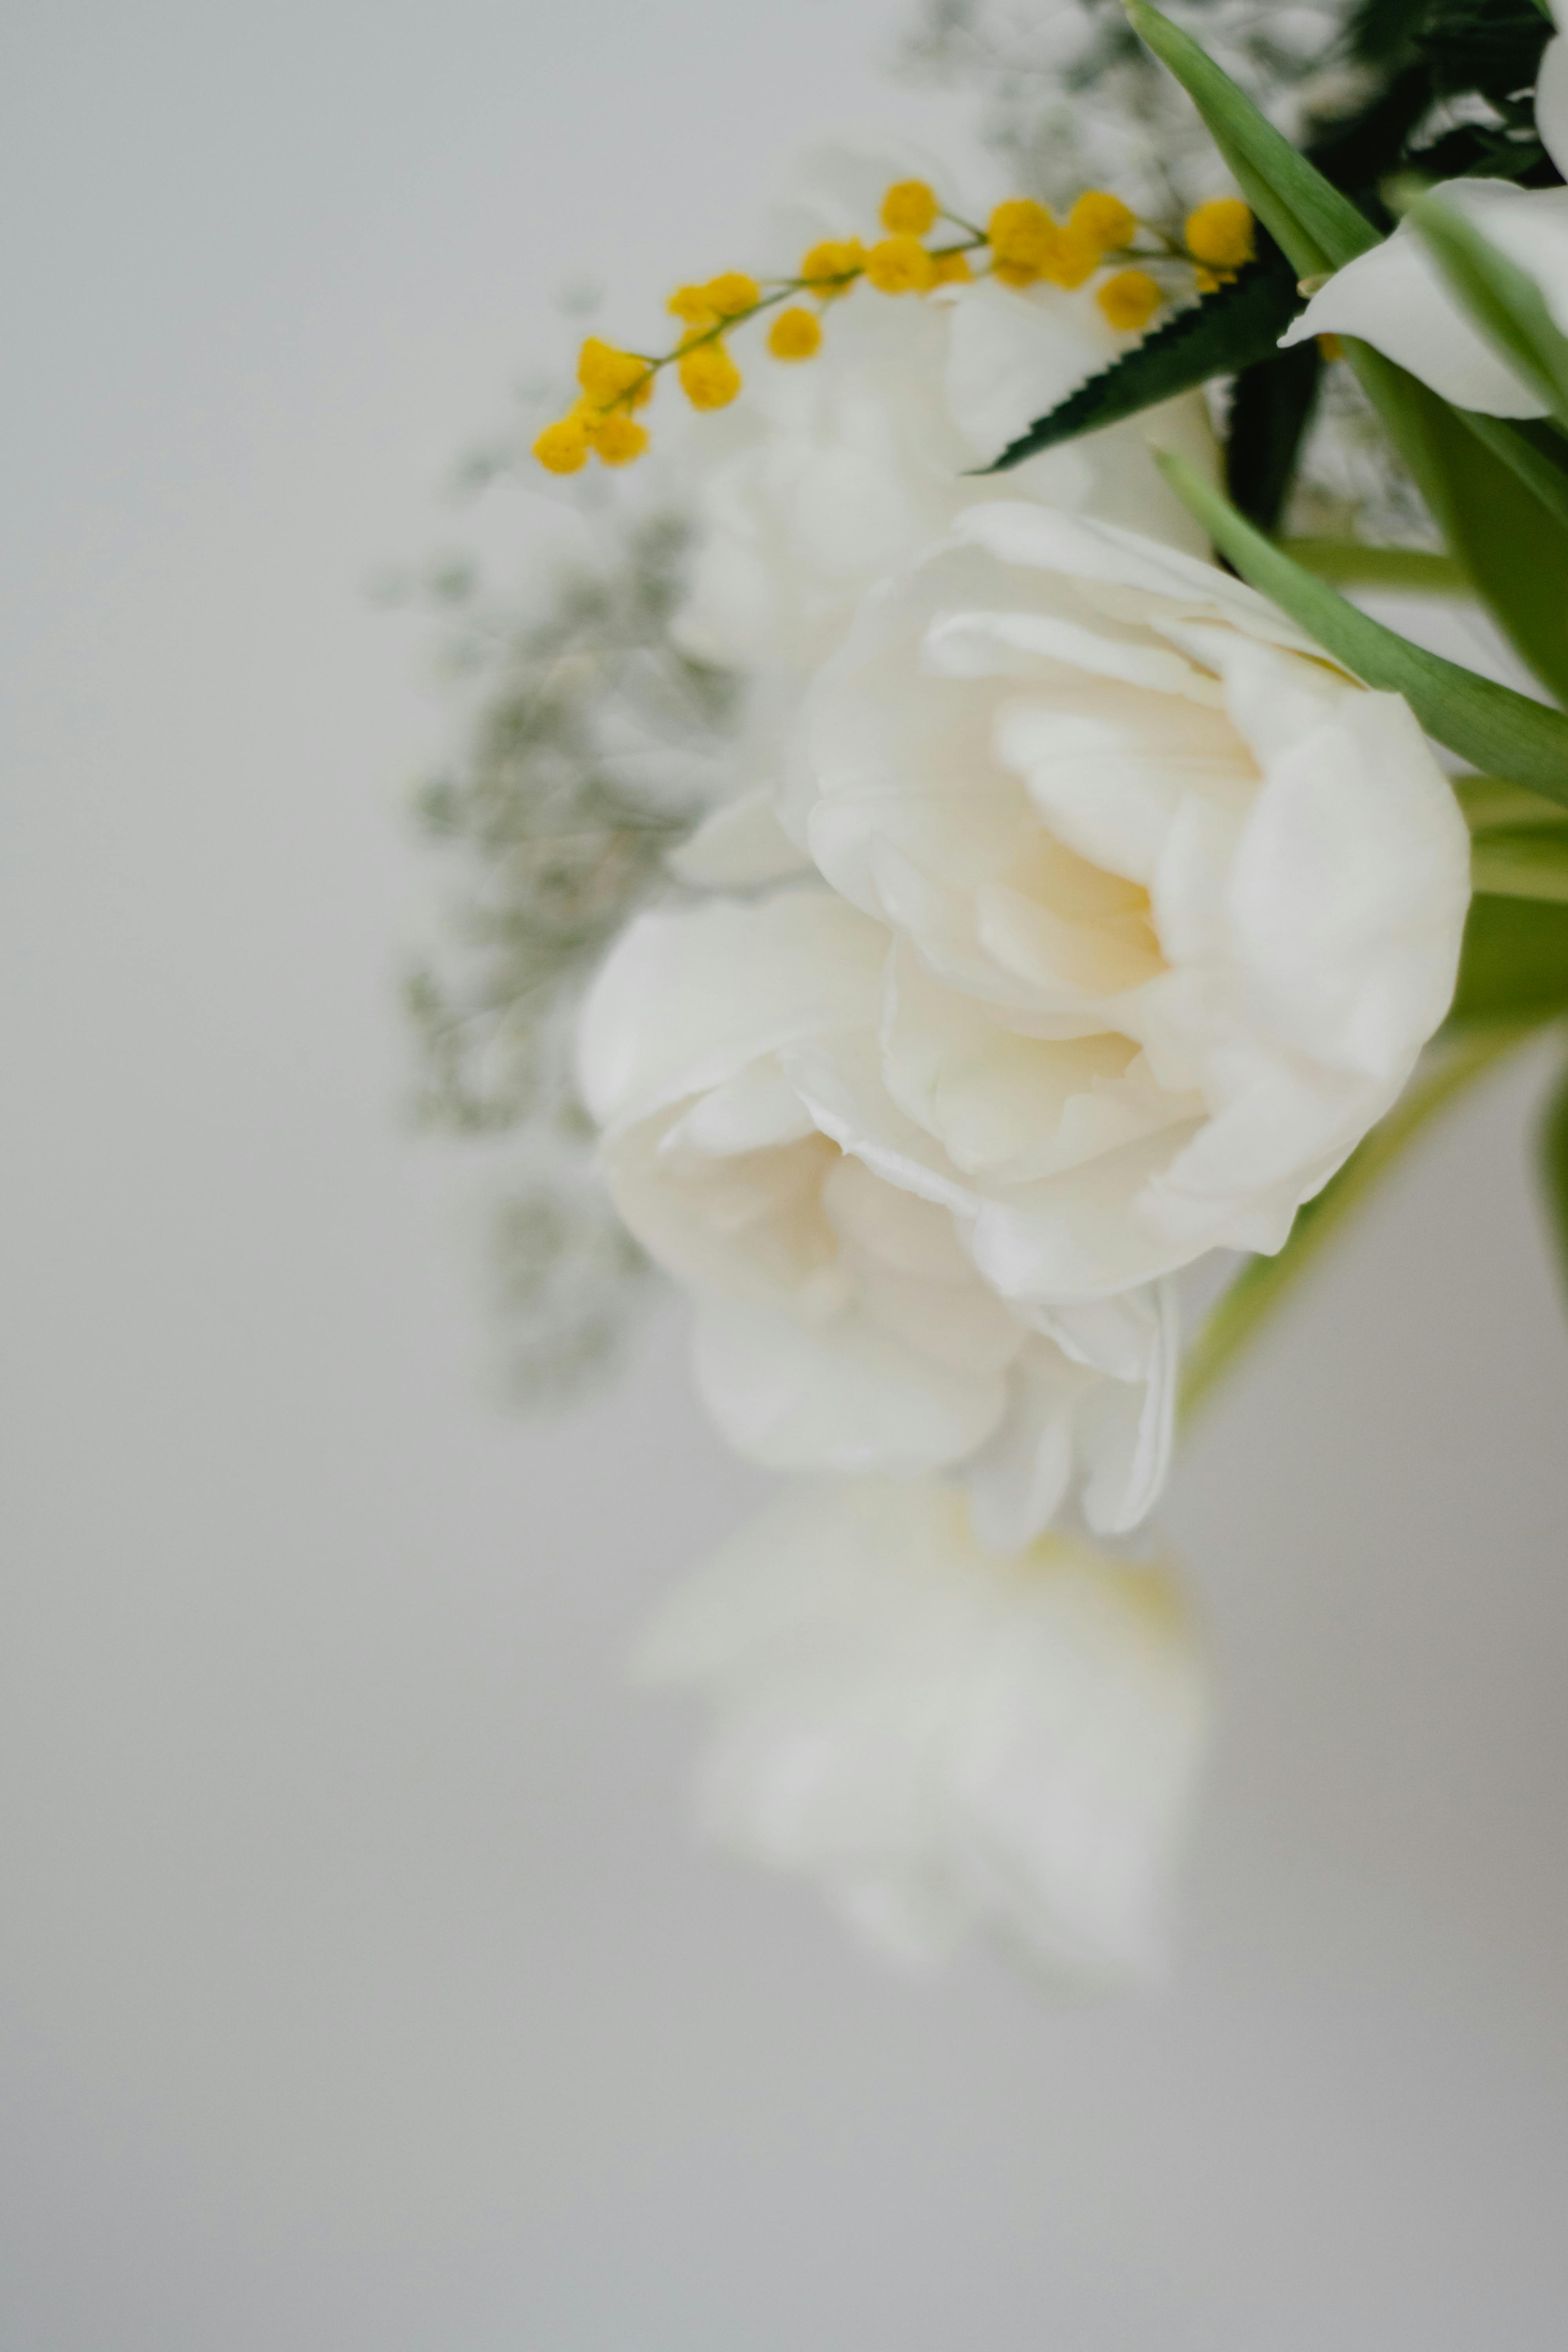 Hoa tulip trắng luôn là món quà tuyệt vời để tặng người thân, người yêu hoặc bạn bè trong những dịp đặc biệt. Hãy ngắm nhìn bức ảnh hoa tulip tuyệt đẹp để cảm nhận được sự tinh tế và lãng mạn của loài hoa này.